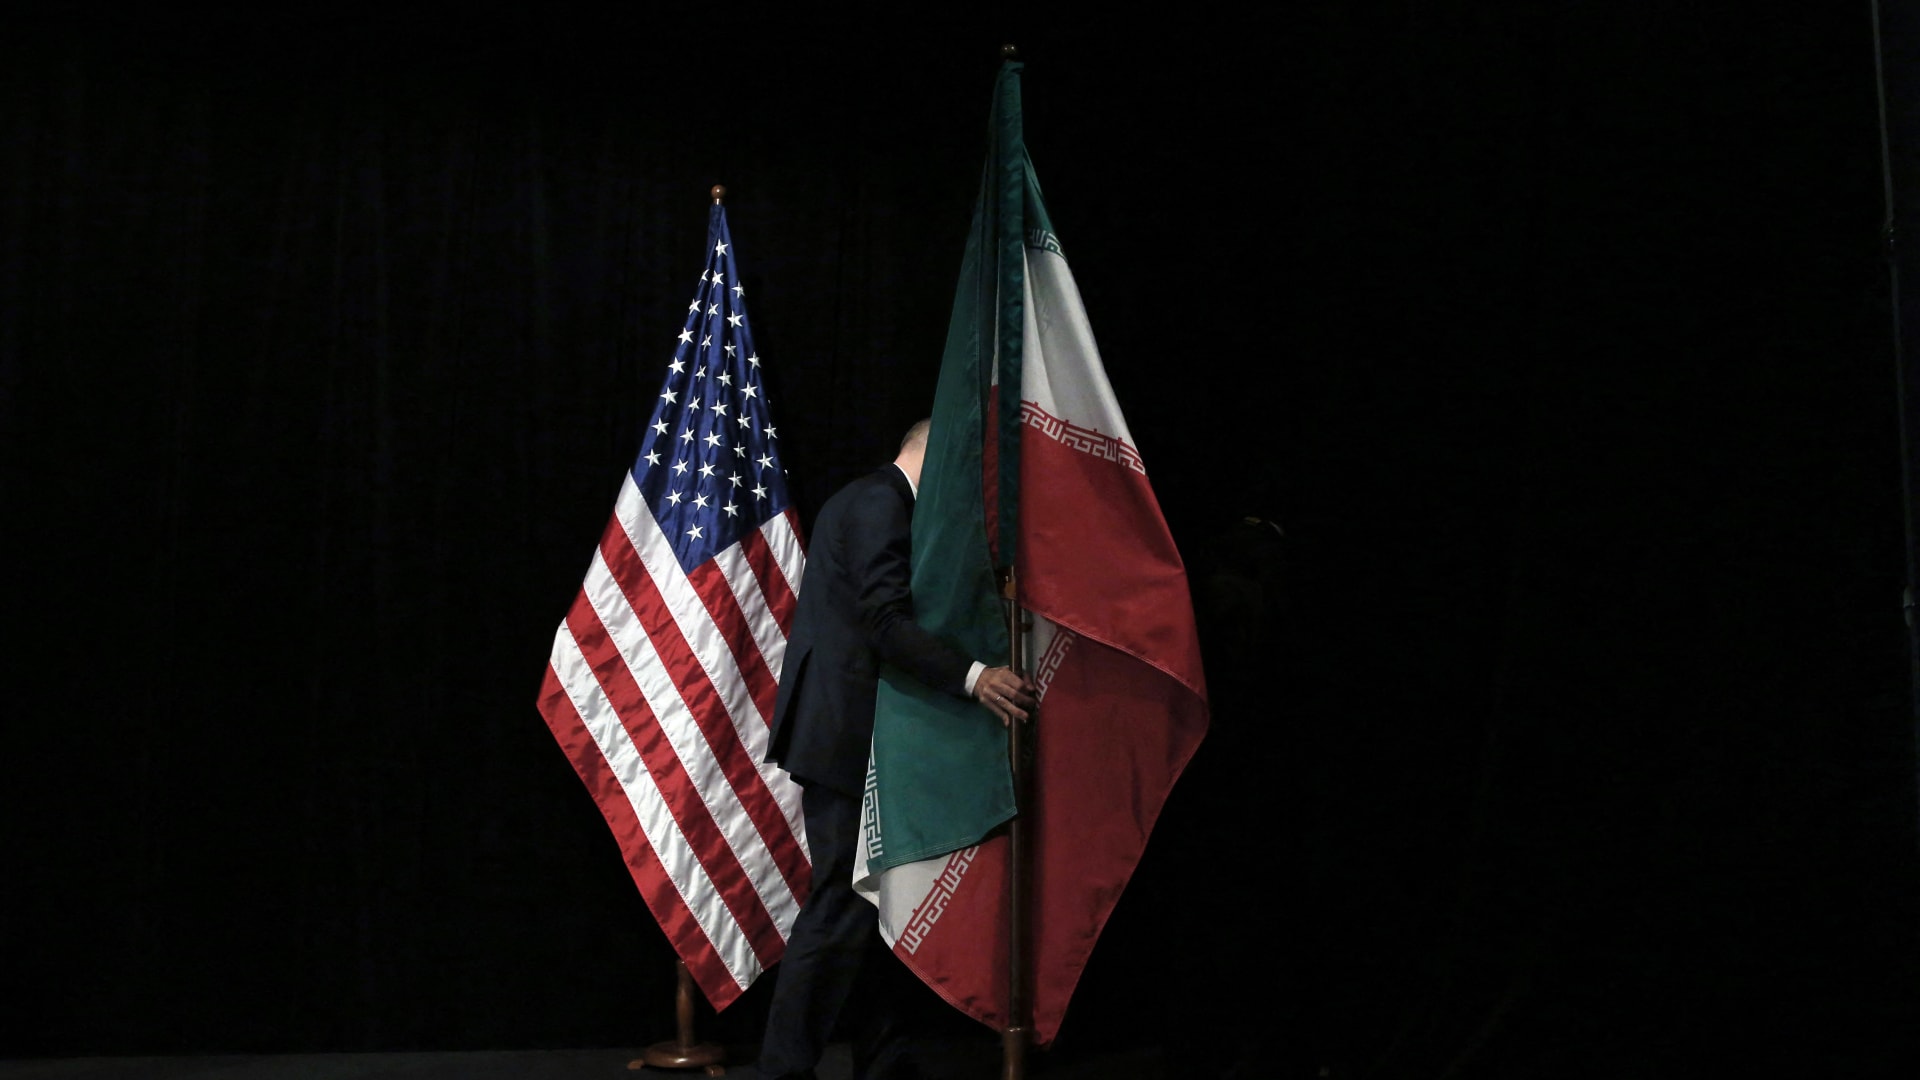 موظف يرفع العلم الإيراني بعد صورة جماعية خلال المحادثات النووية في فيينا عام 2015 